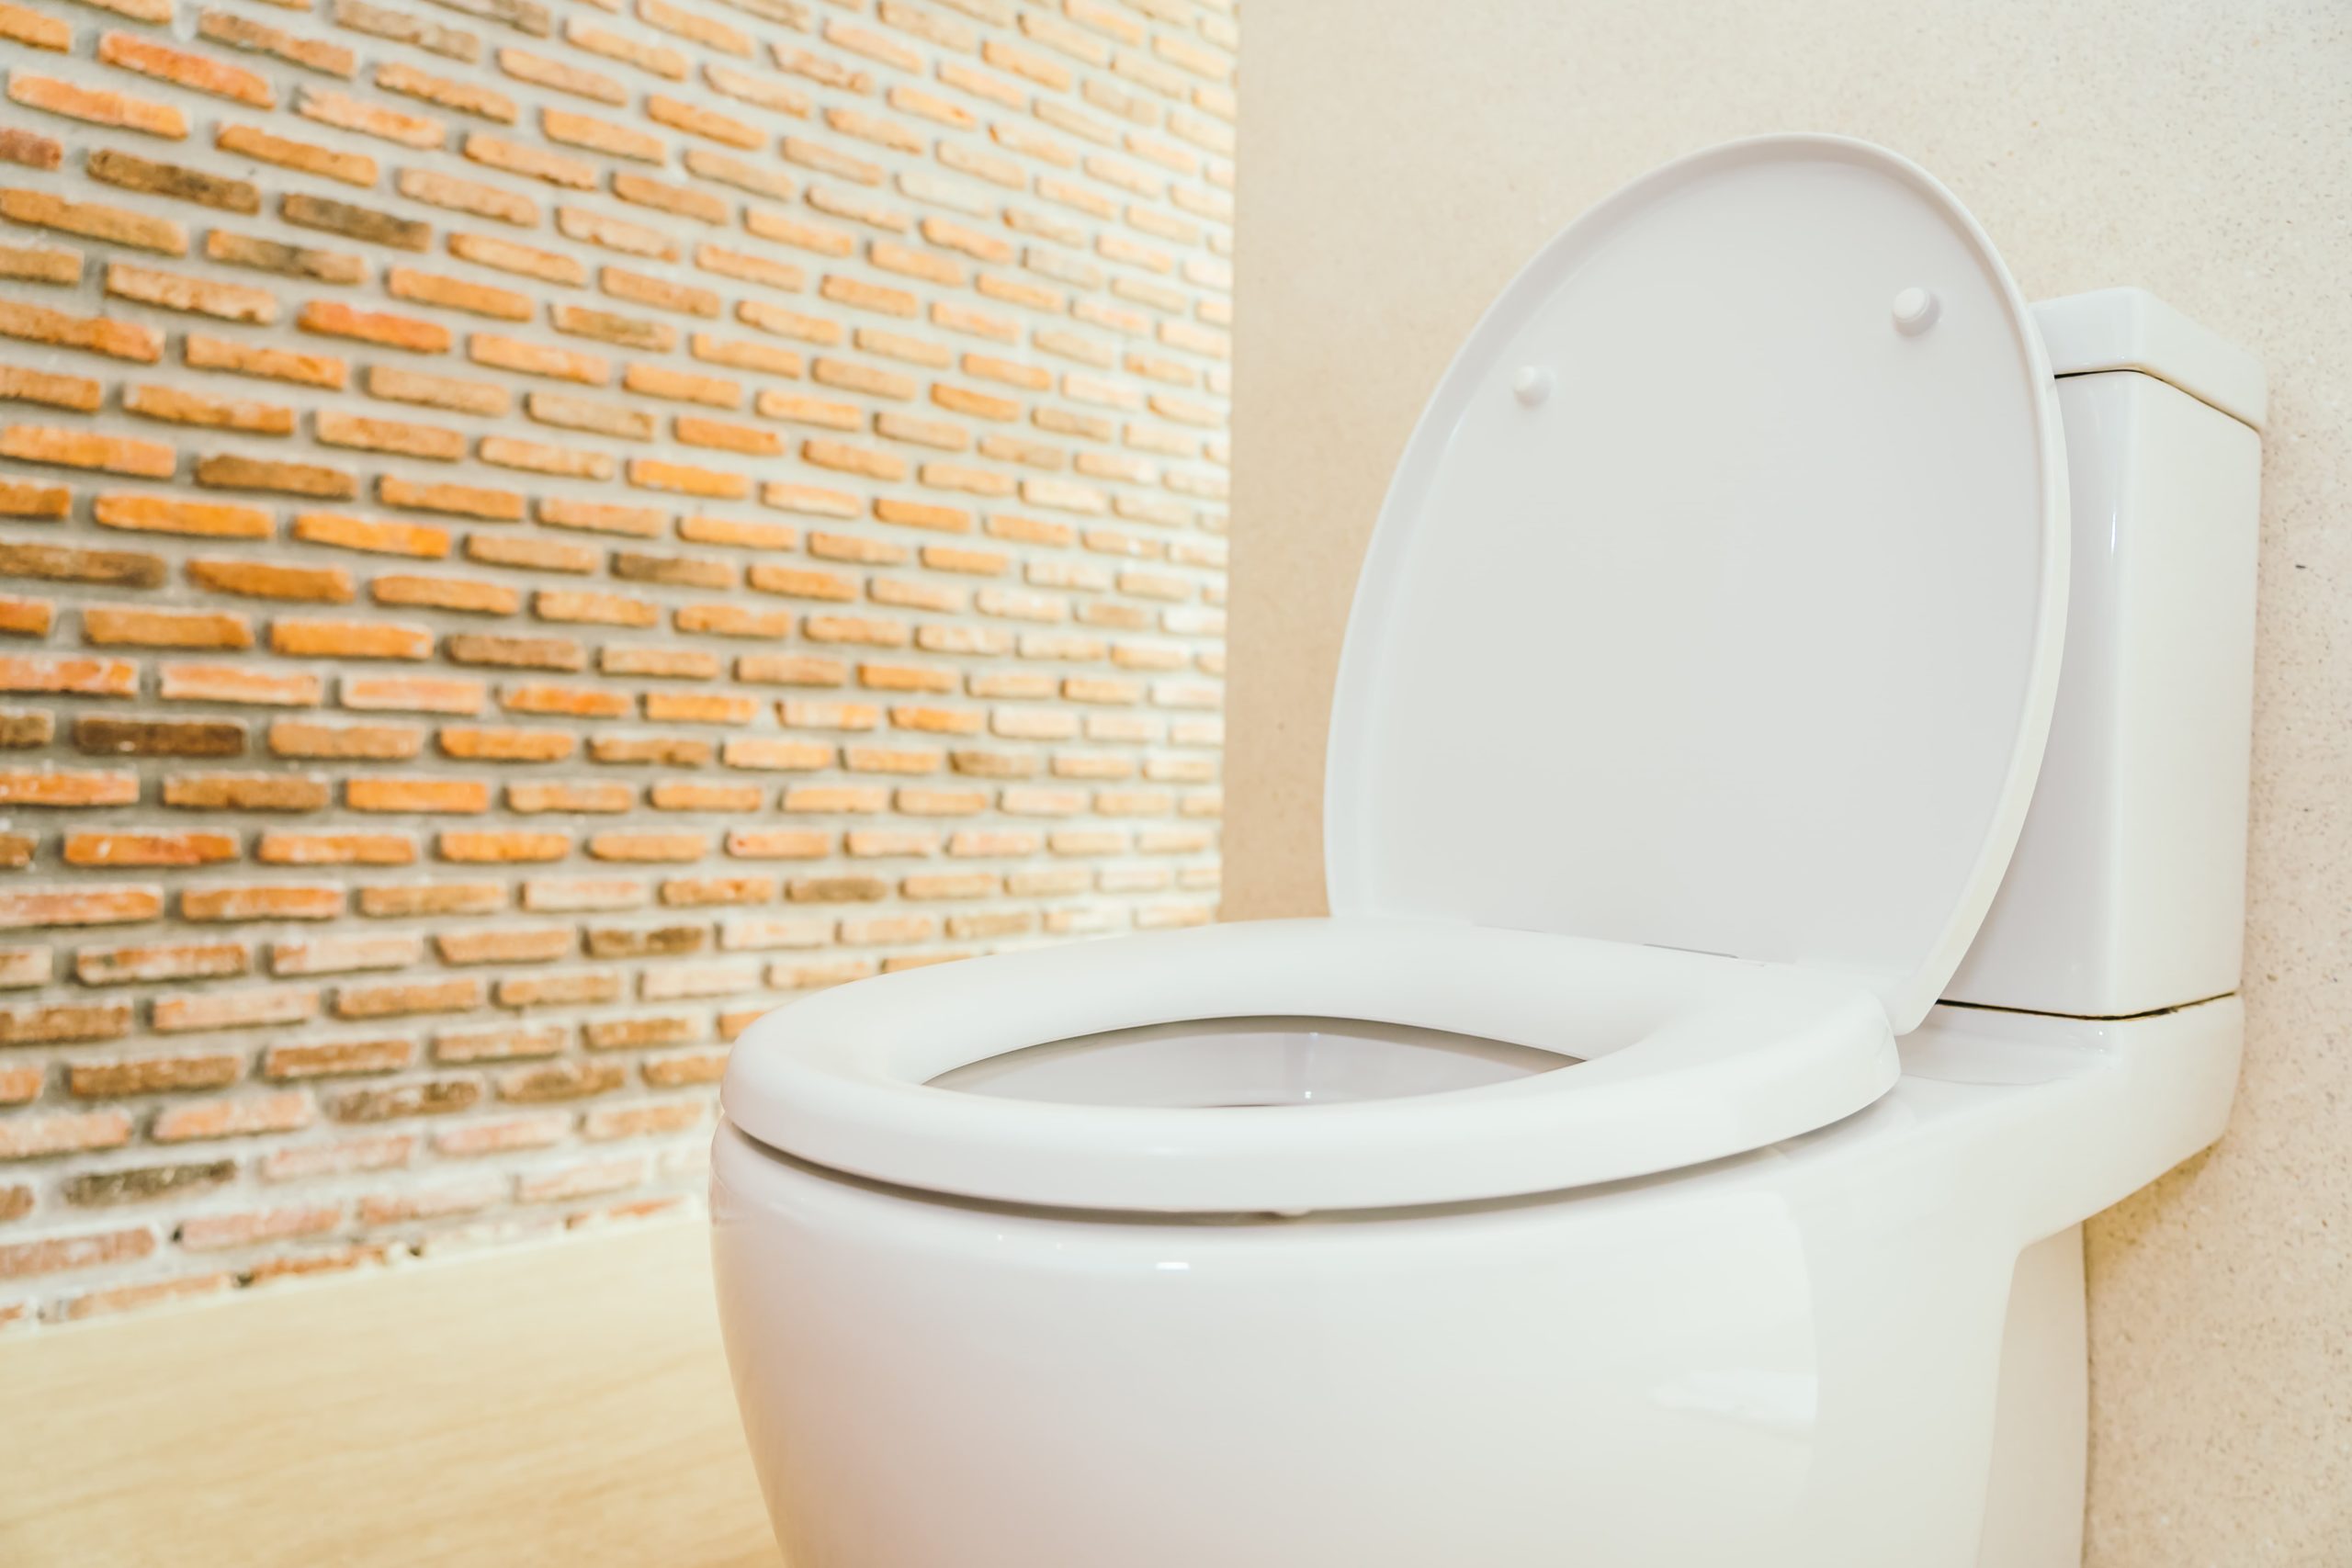 Vaso sanitário: Privada branca, paredes ao redor bege, e uma parede de tijolo branco